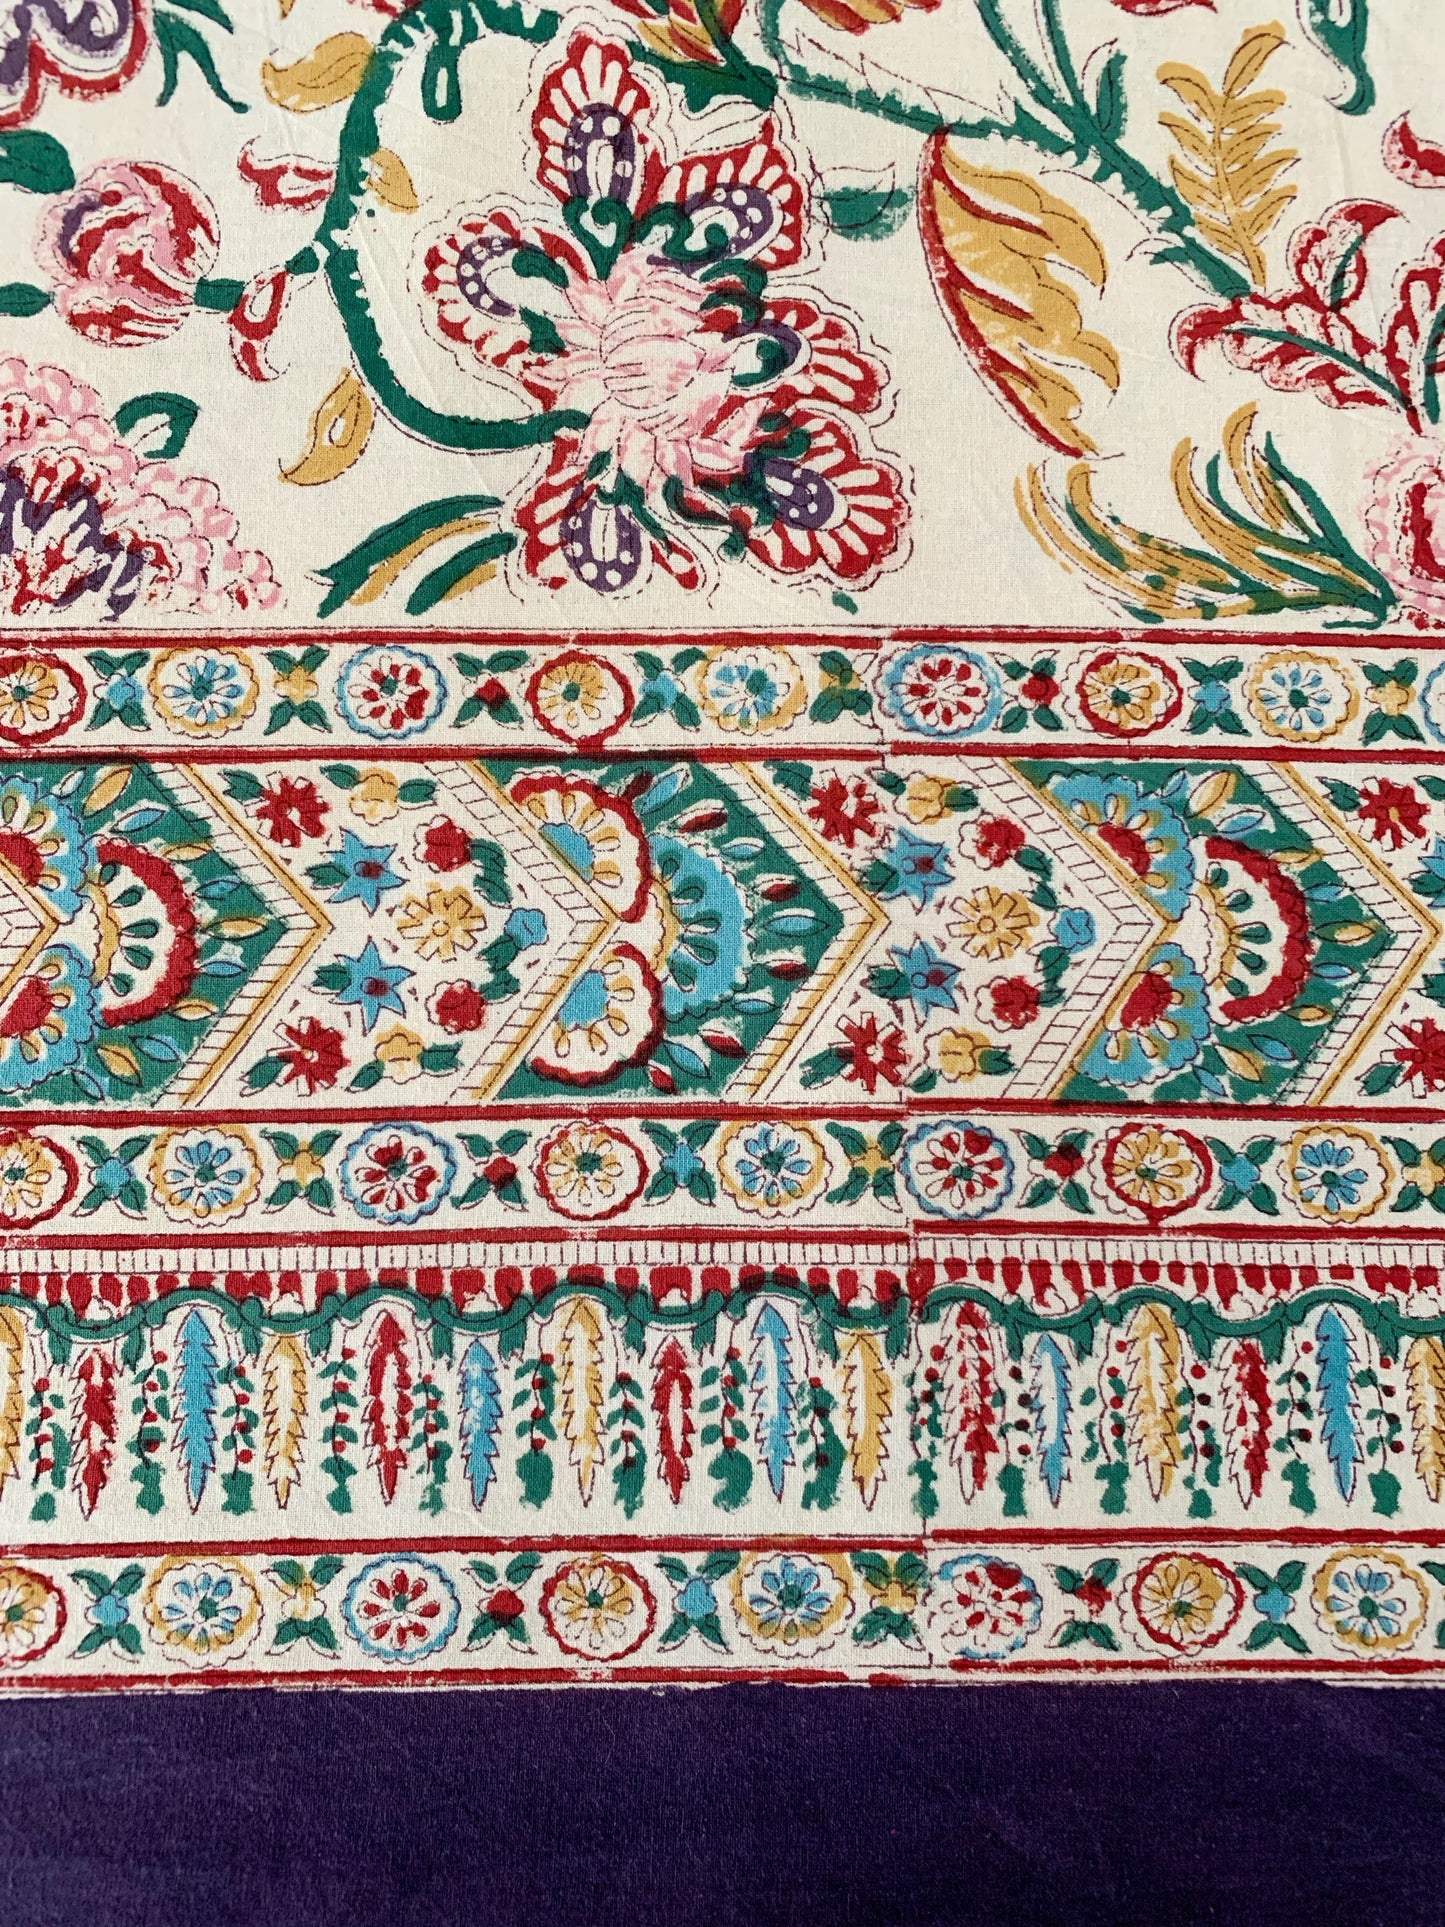 Mantel algodón puro estampado block print artesanal en India · Seis comensales · Mantel boho chic 100% algodón hindú · Crema flores colores